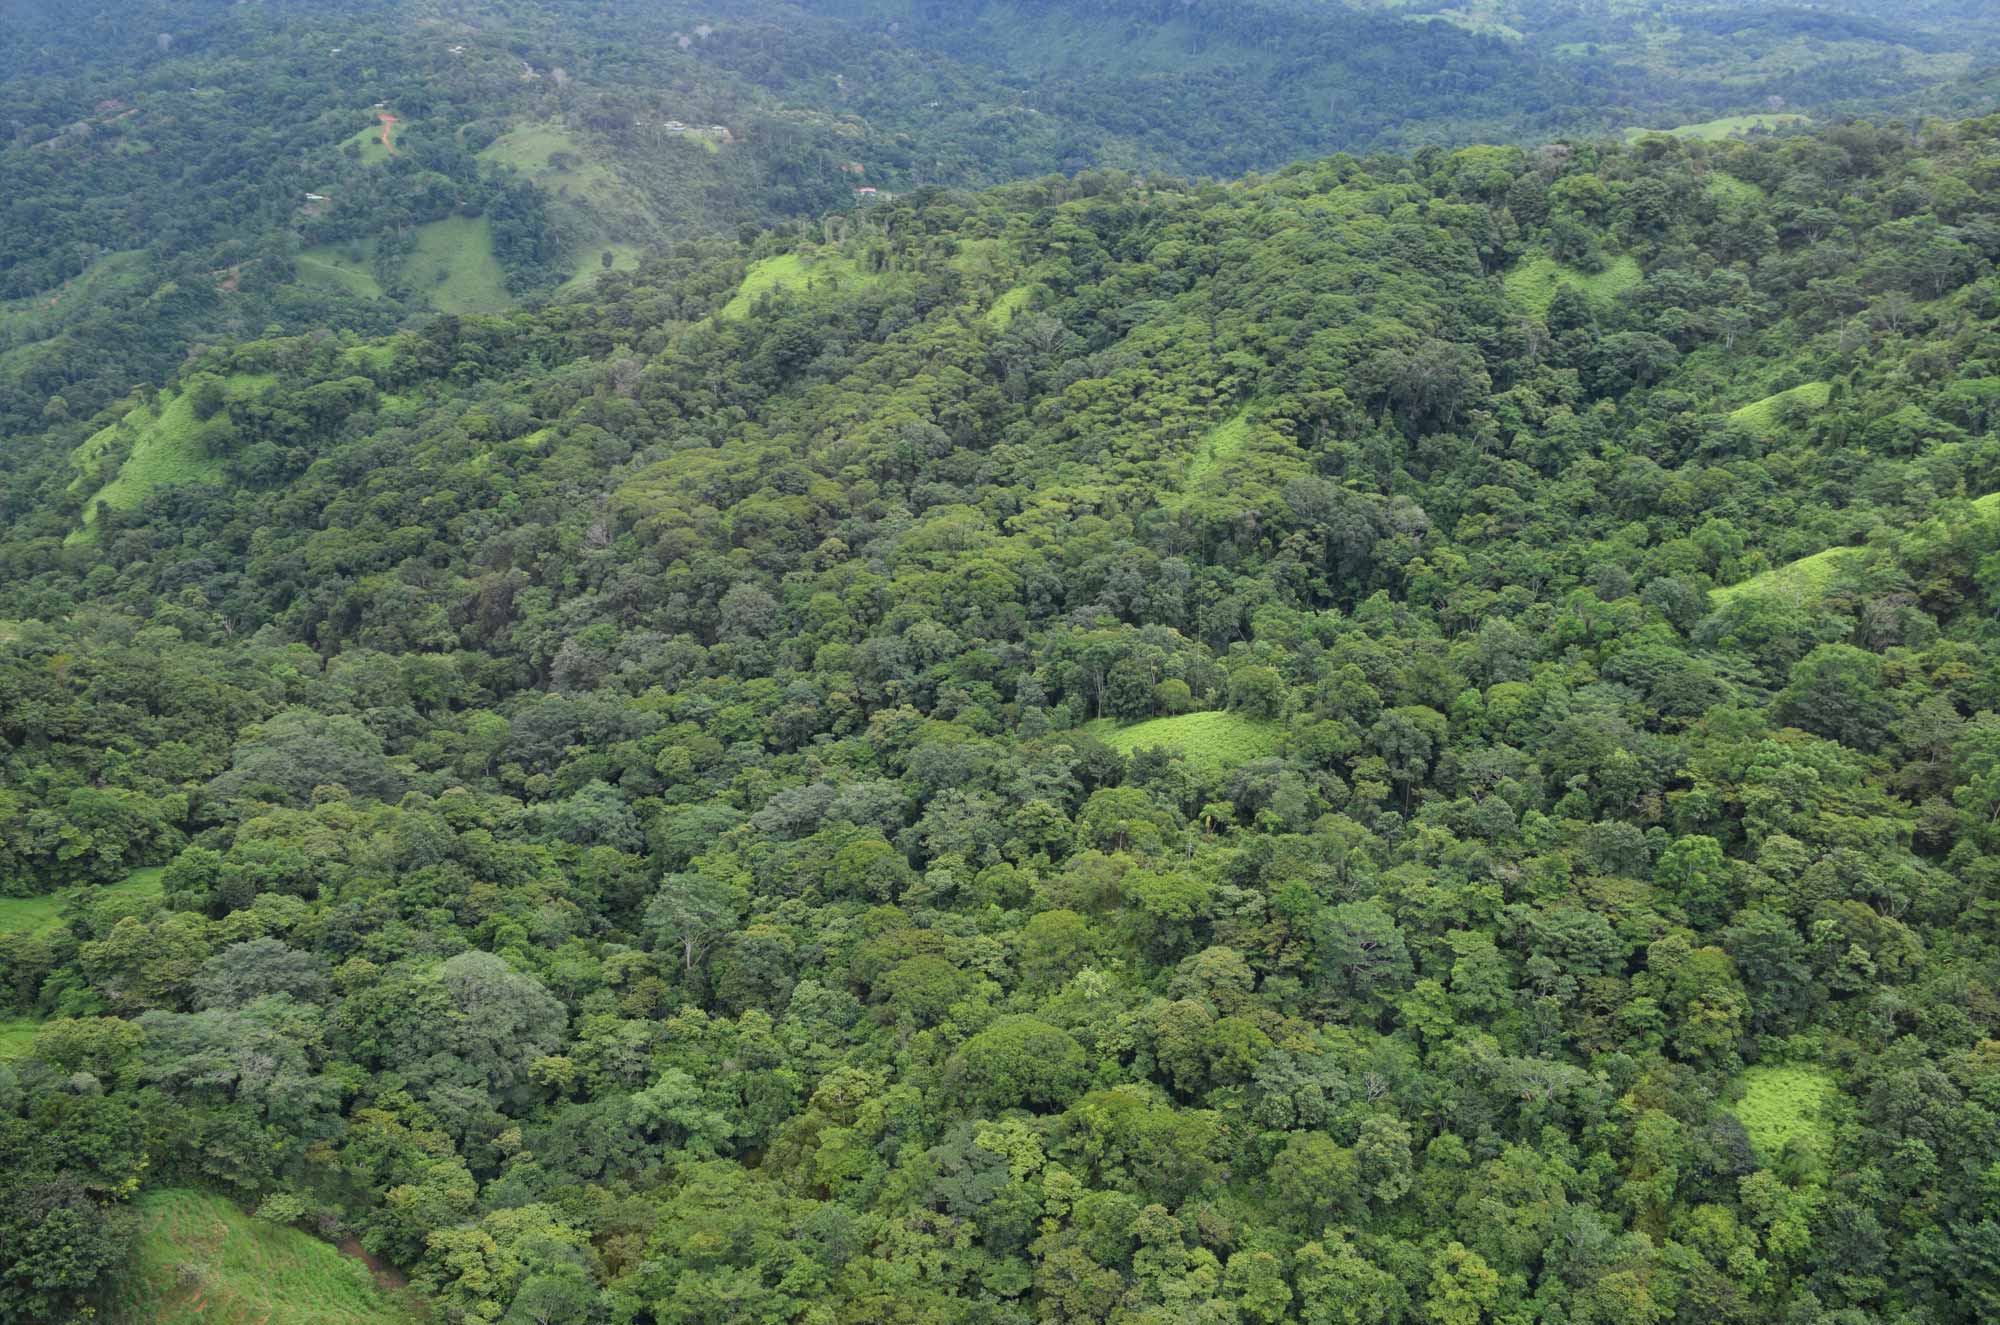 Rainforest Natural Reserve in Baru Costa Rica